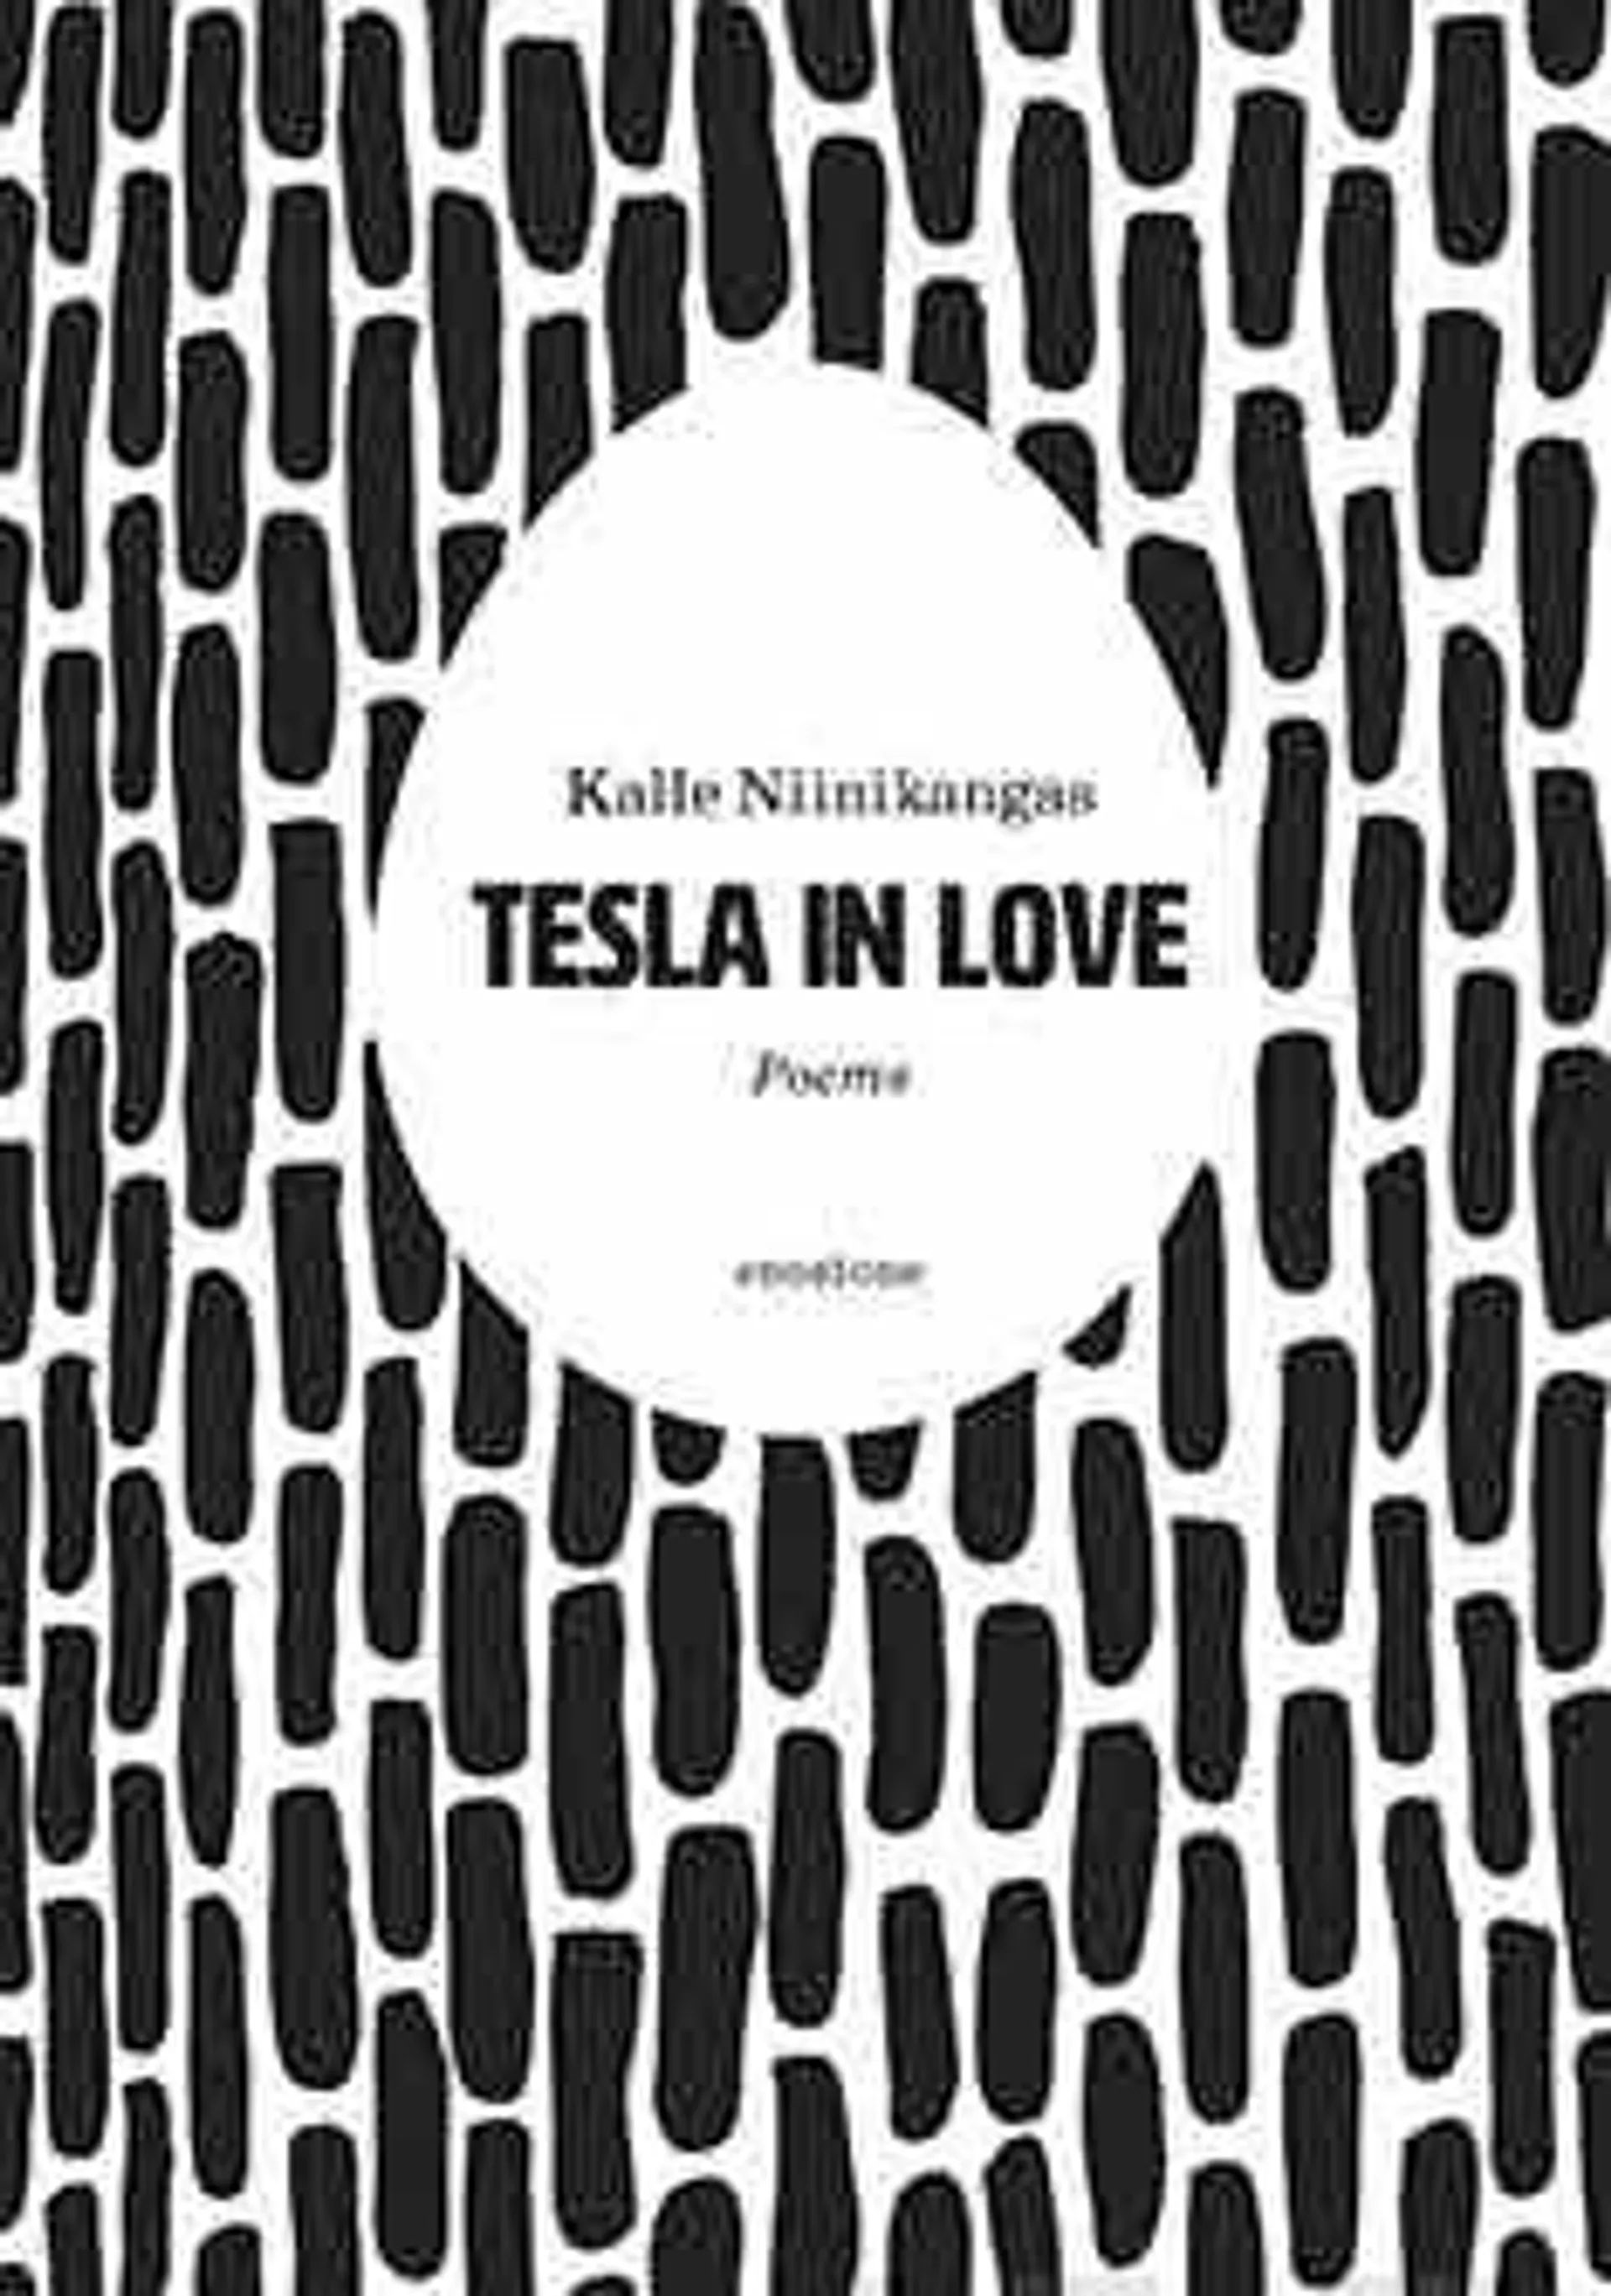 Niinikangas, Tesla in love